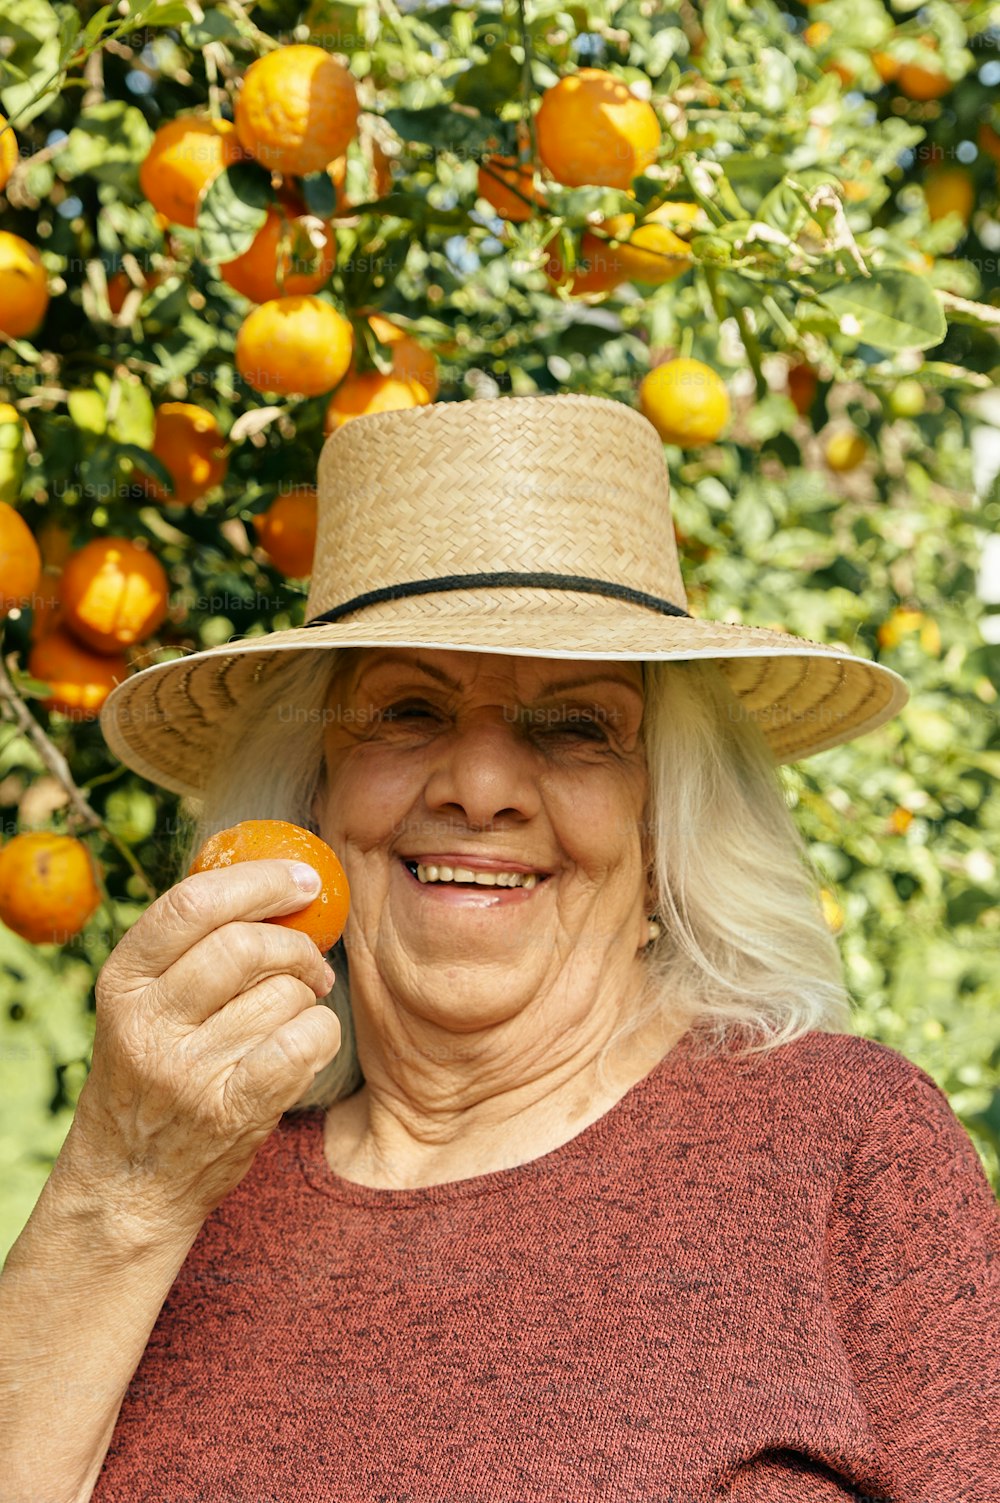 オレンジを持つ麦わら帽子をかぶった女性